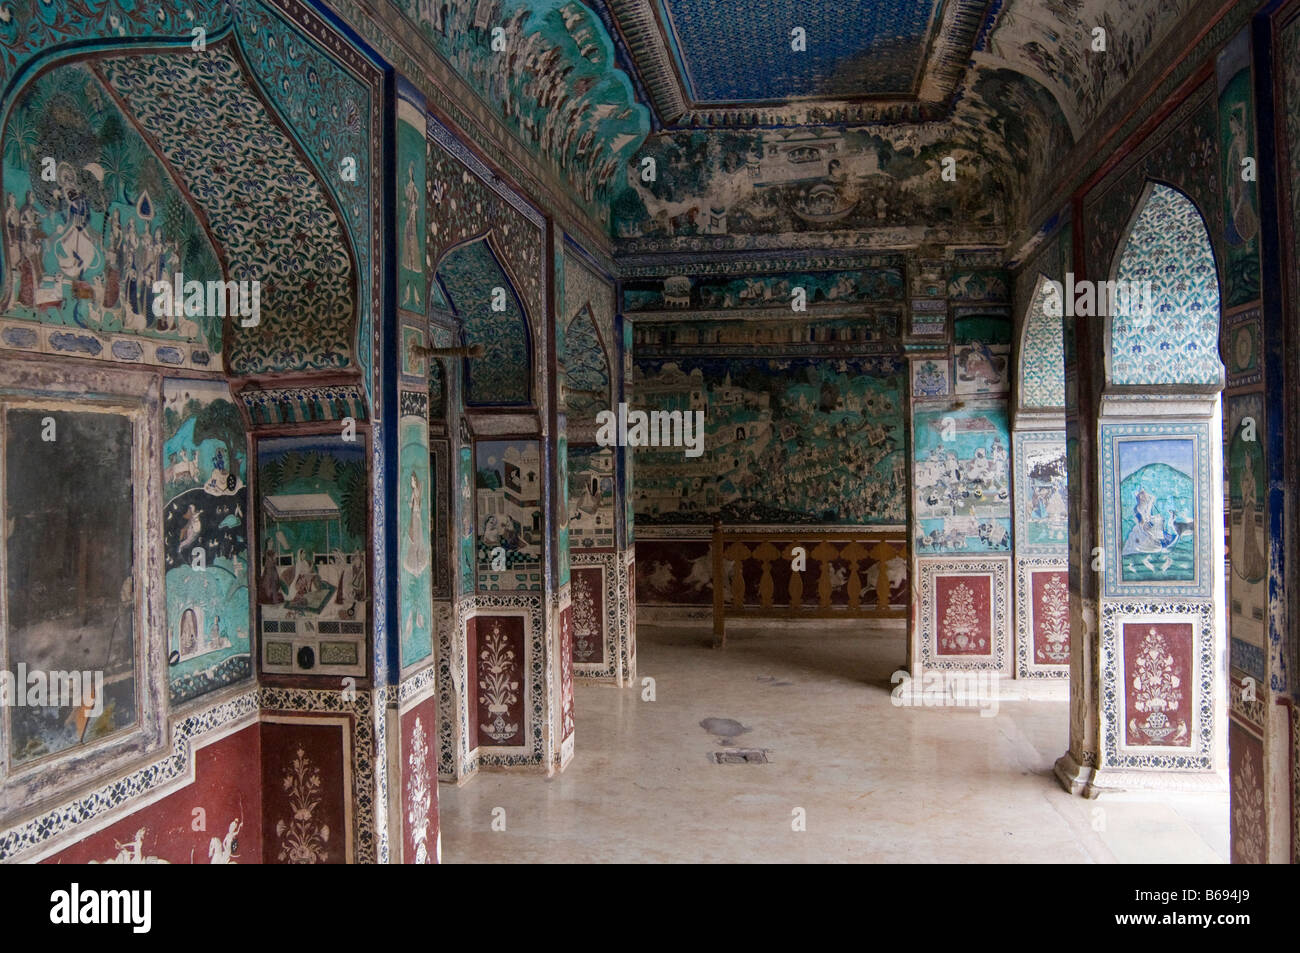 La peinture dans le palais Bundi. Le Rajasthan. L'Inde. Asie Banque D'Images